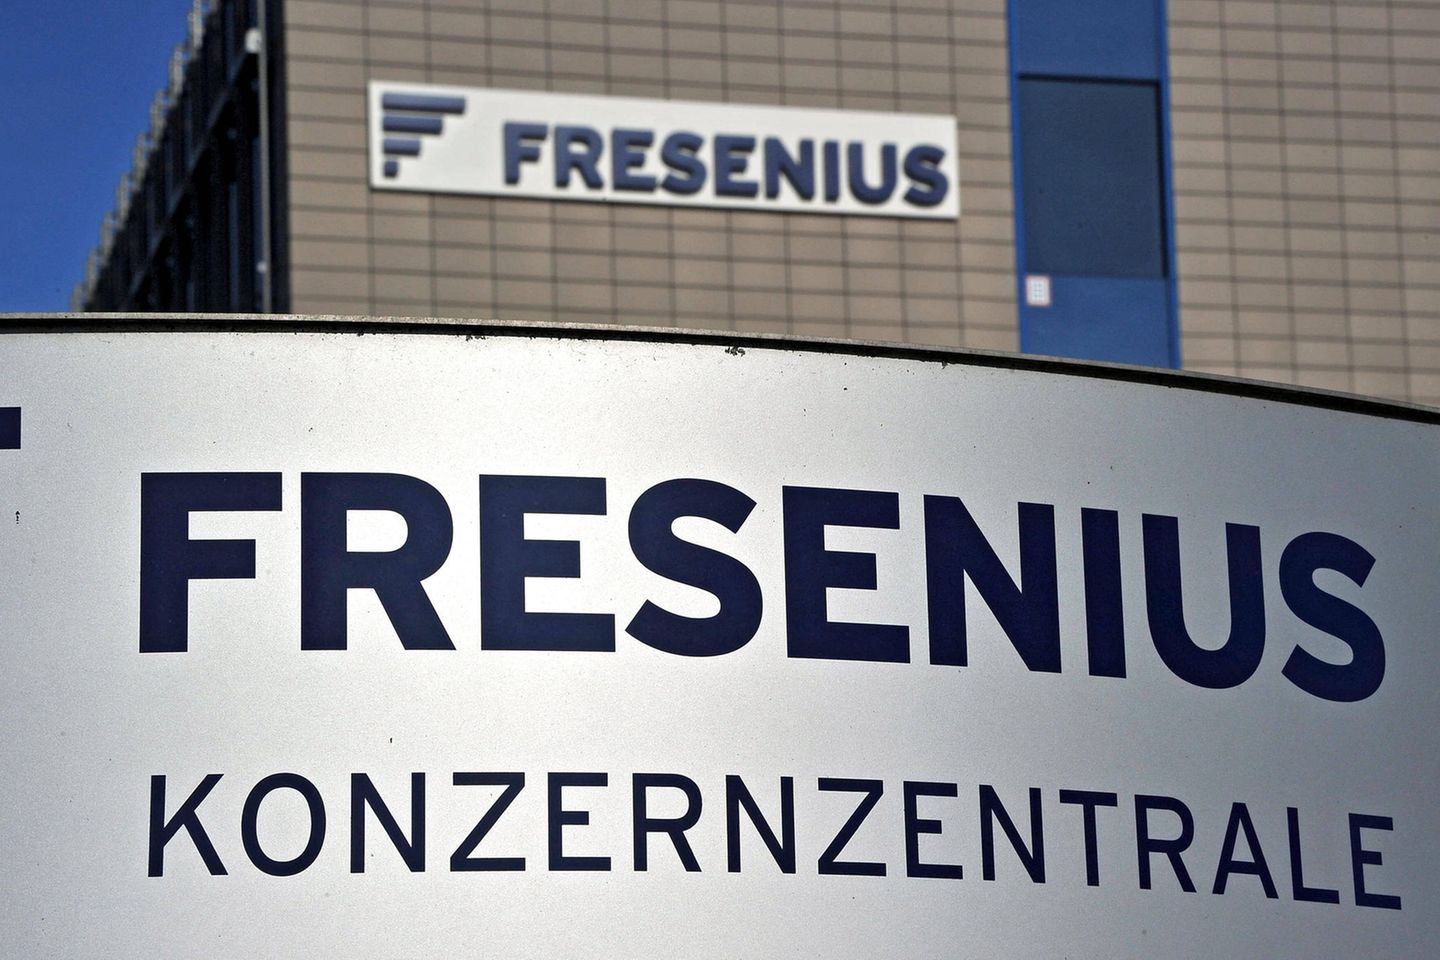 Fresenius Konzernzentrale in Bad Homburg. Der Gesundheitskonzern hat ein kompliziertes Jahr hinter sich